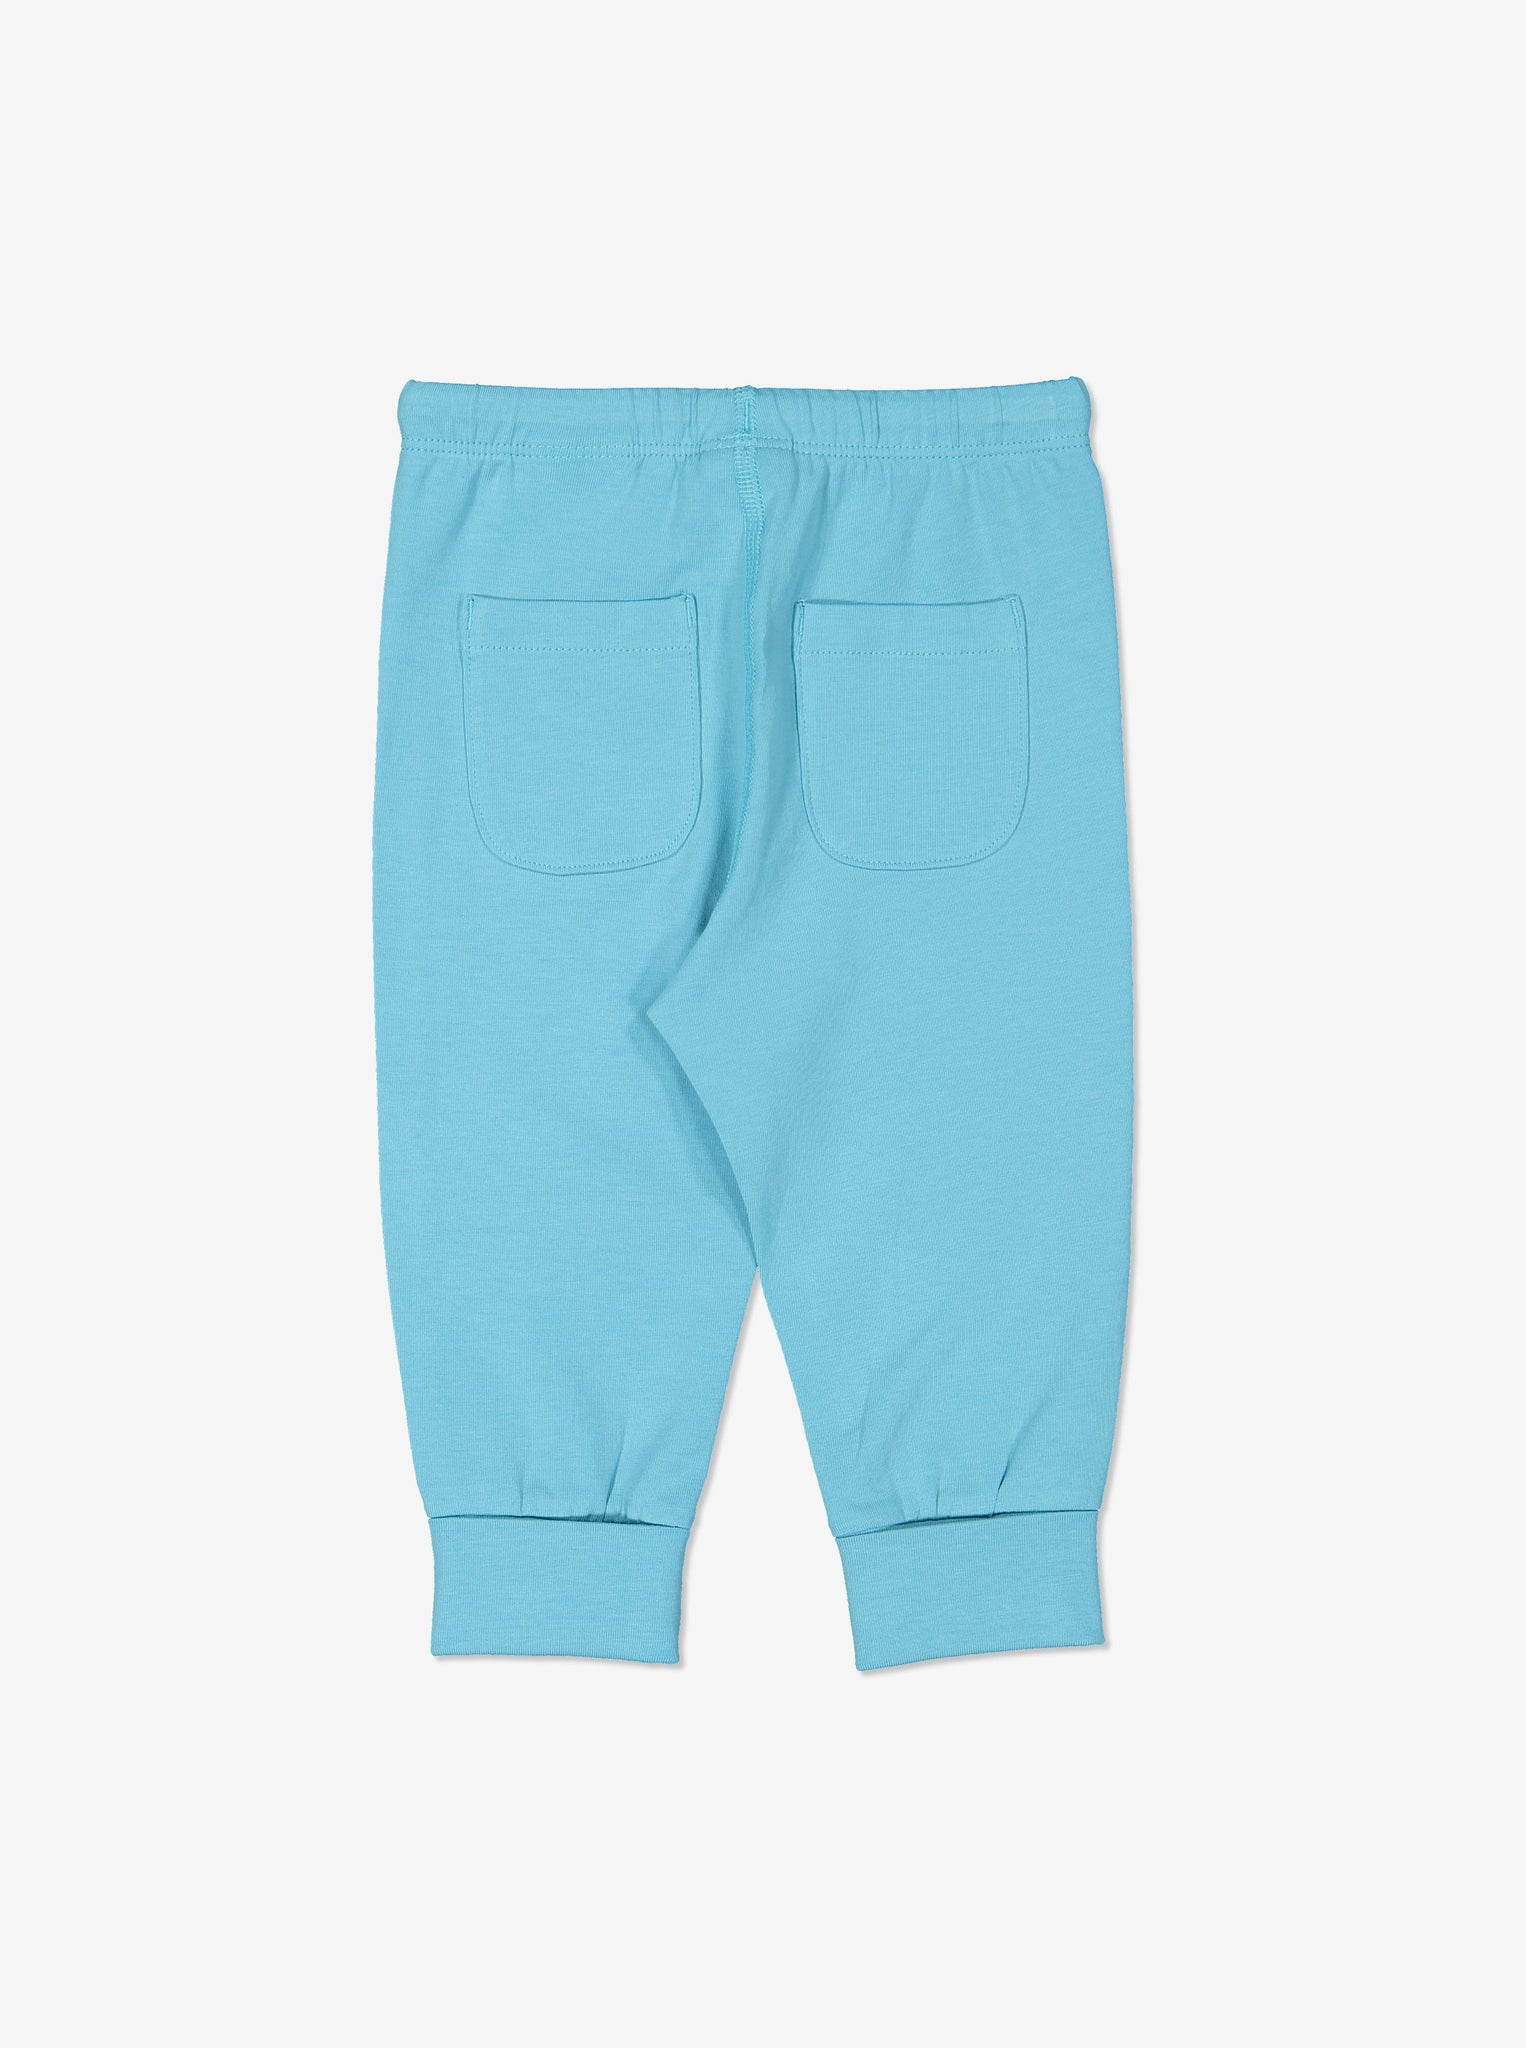 soft blue baby leggings